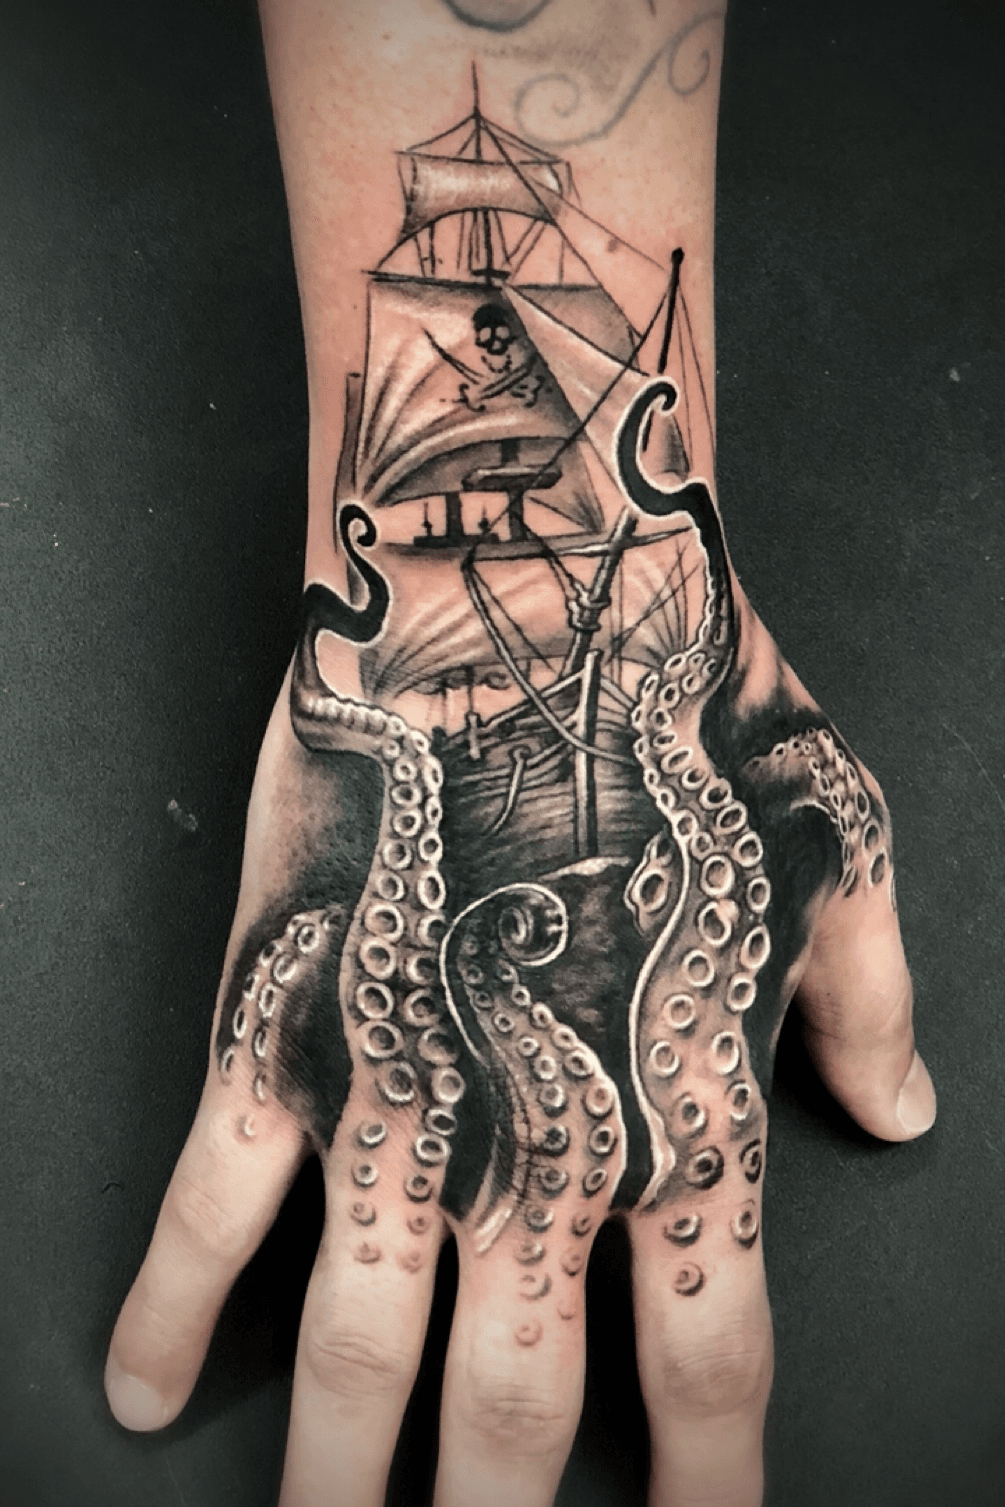 100 Kraken Tattoo Designs For Men  Sea Monster Ink Ideas  Kraken tattoo  Tattoo designs men Tattoos